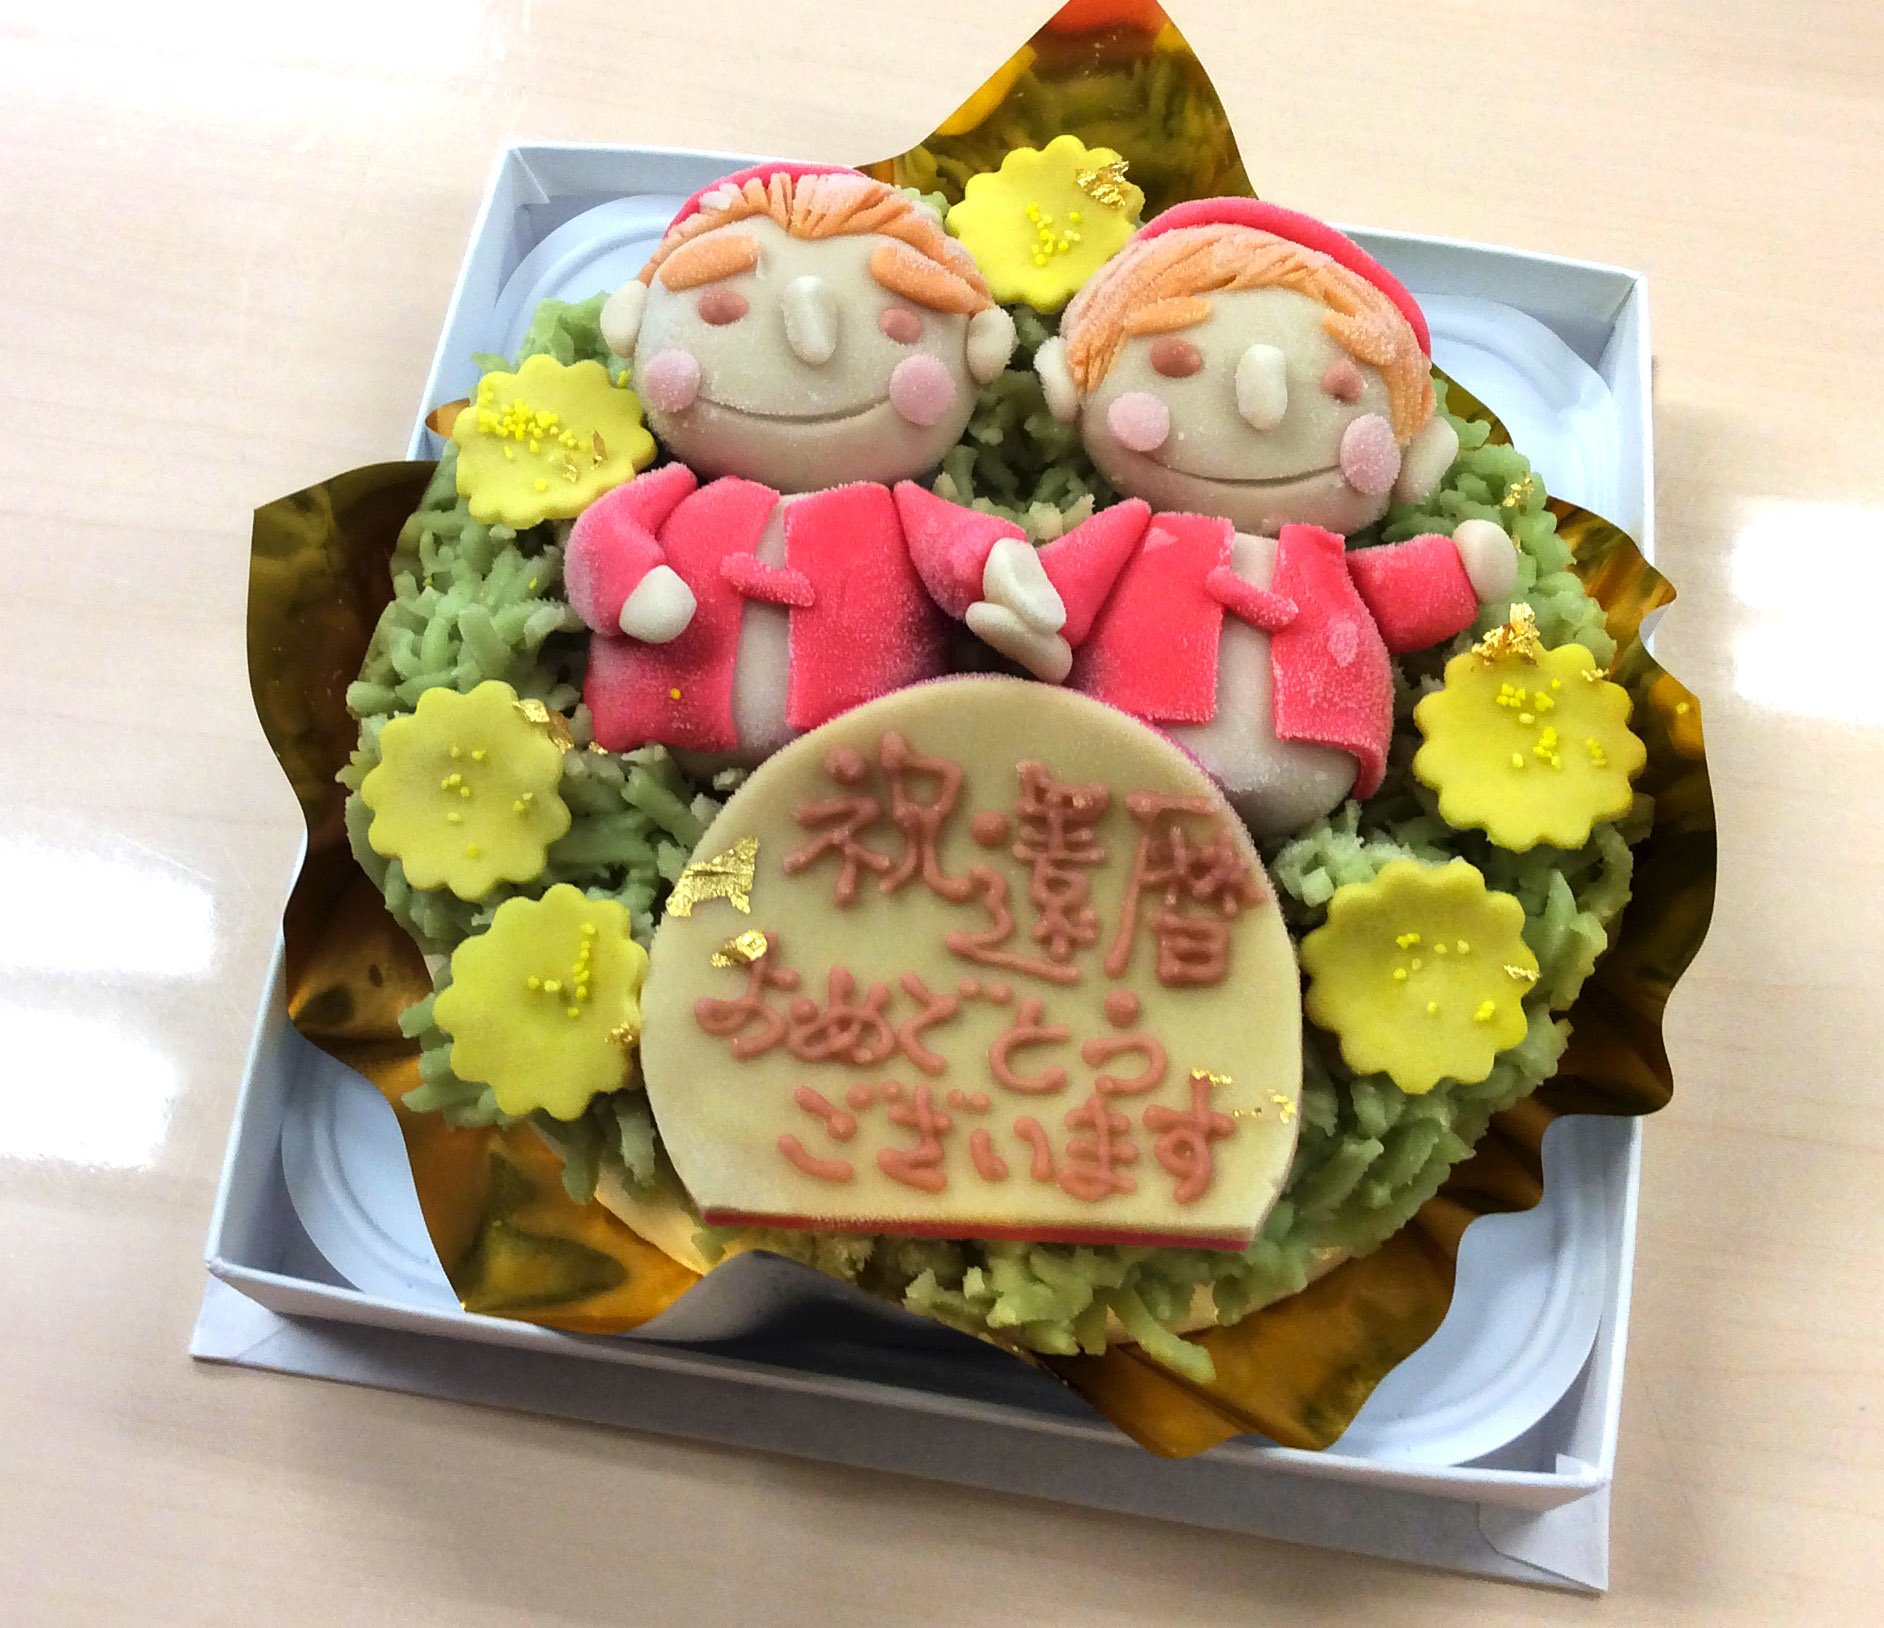 菓子処 喜久春 還暦のお祝いに和菓子ケーキをご注文いただきました